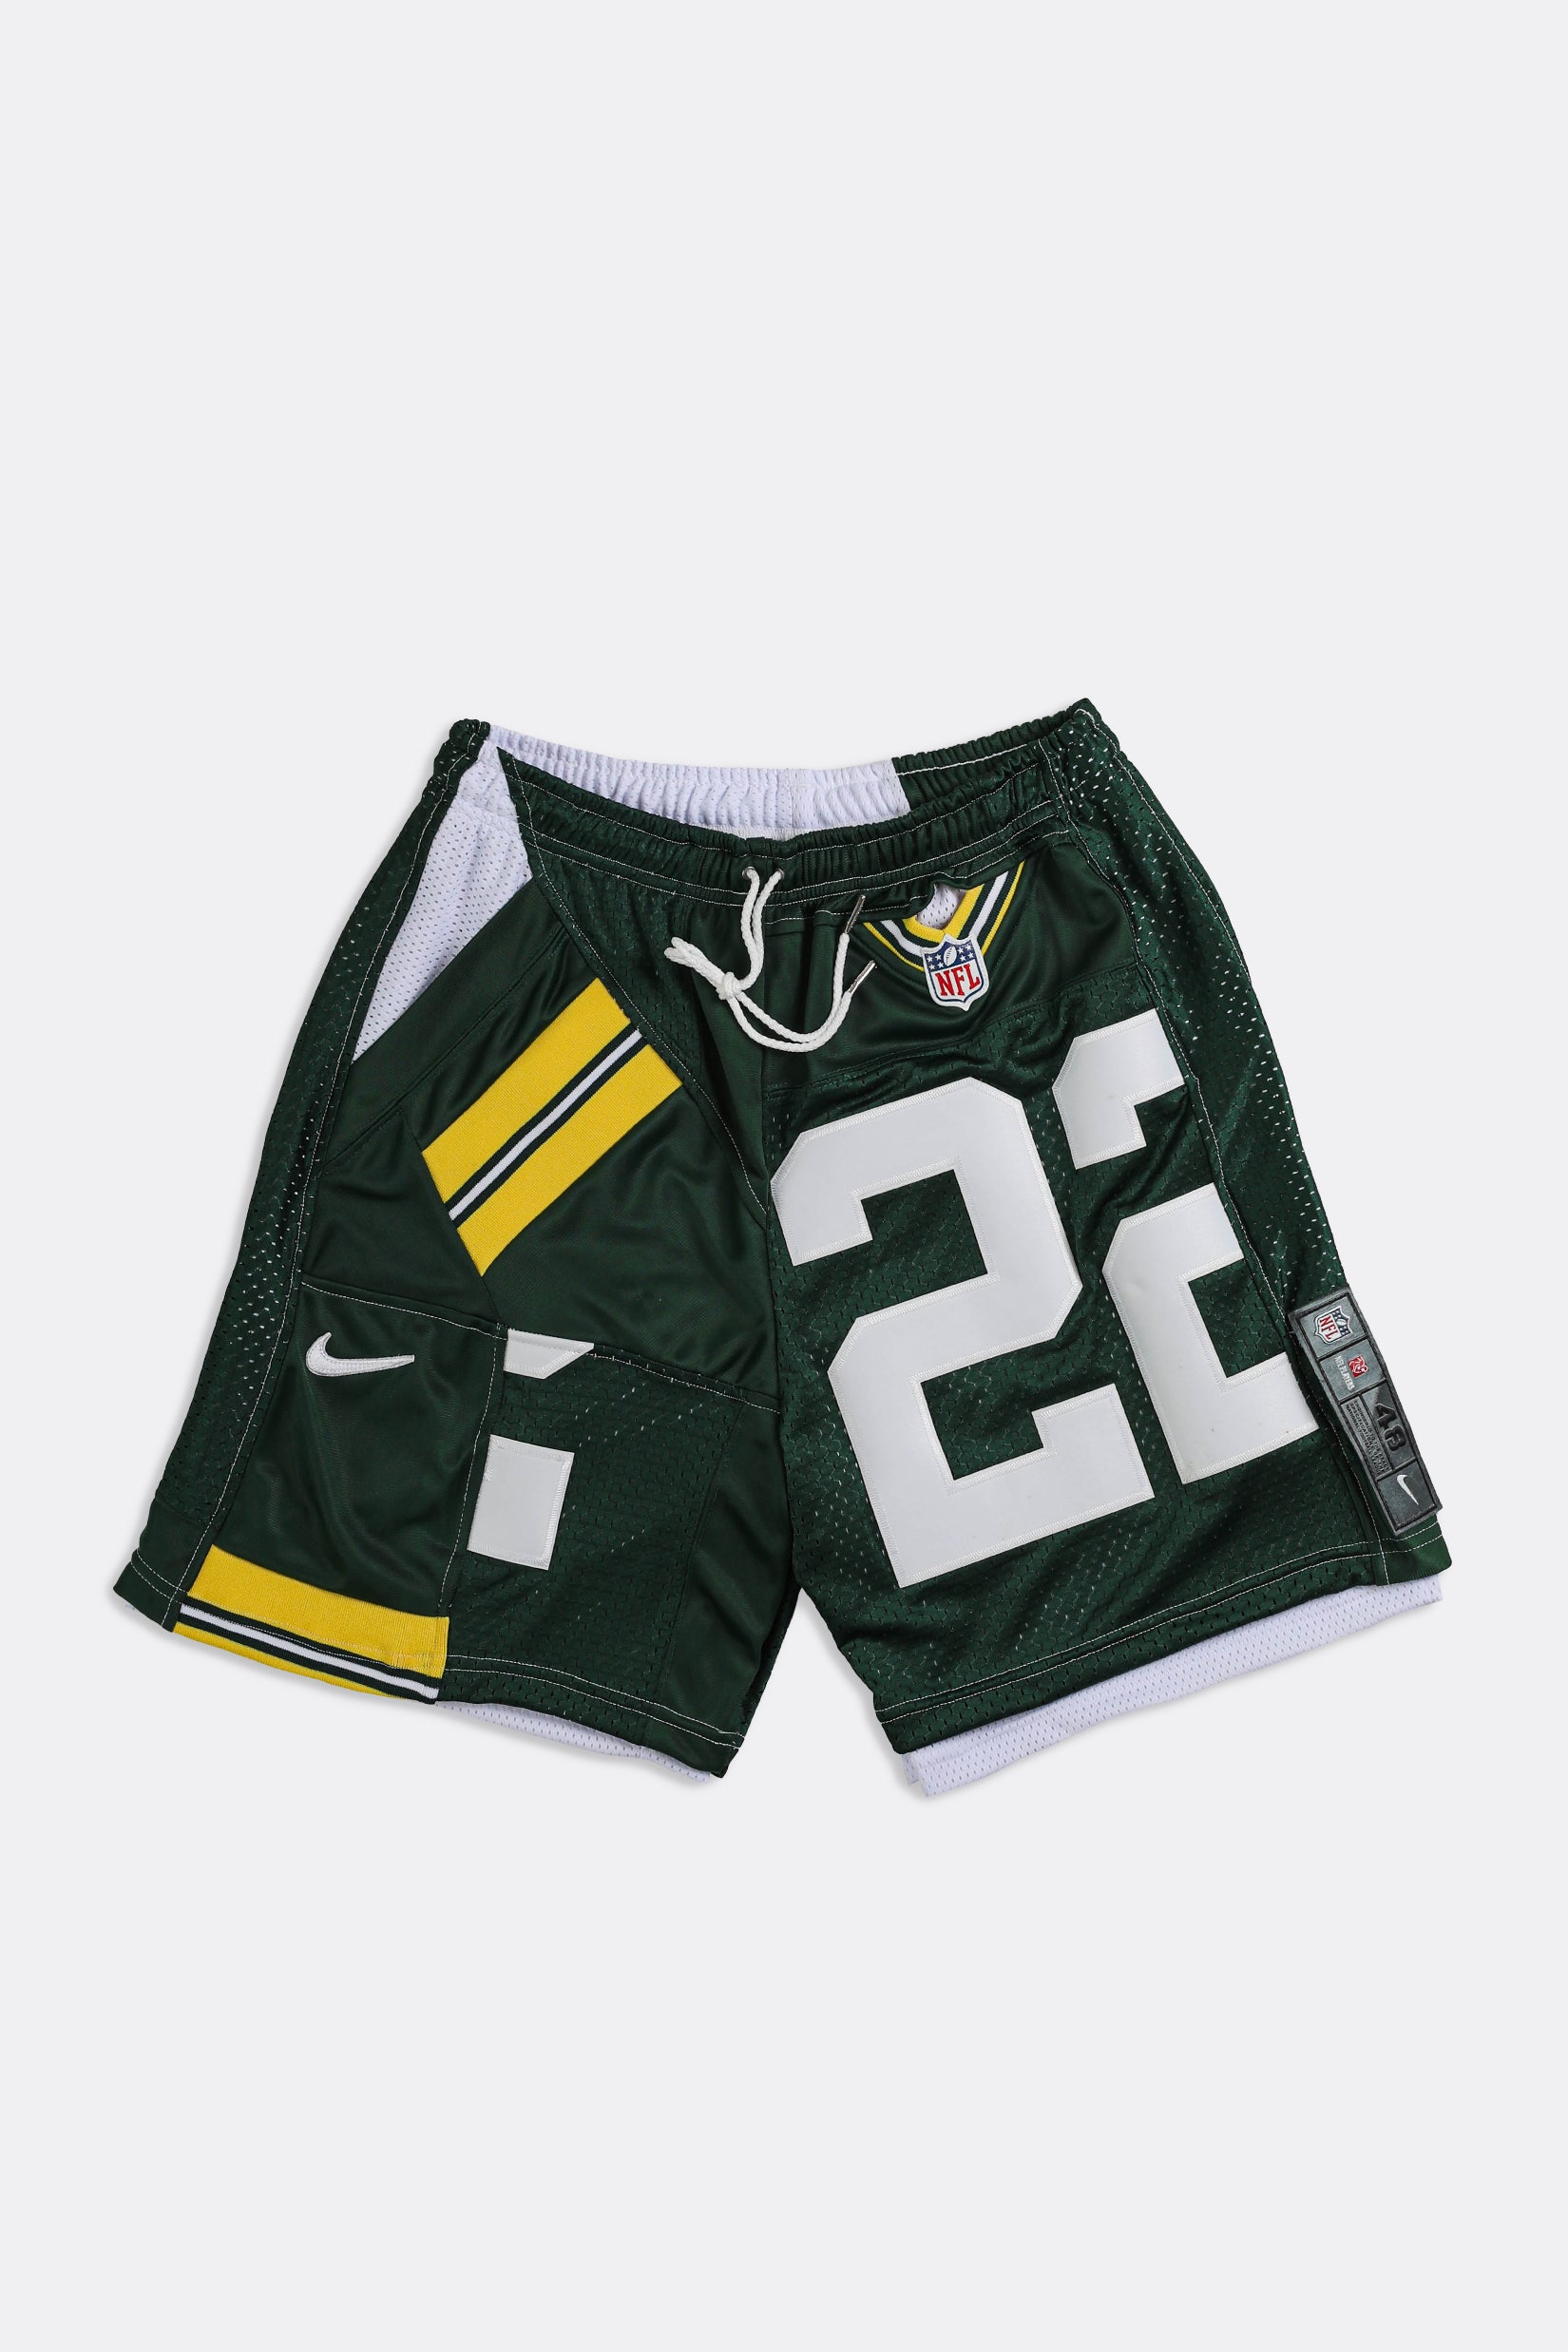 green bay packers mesh shorts